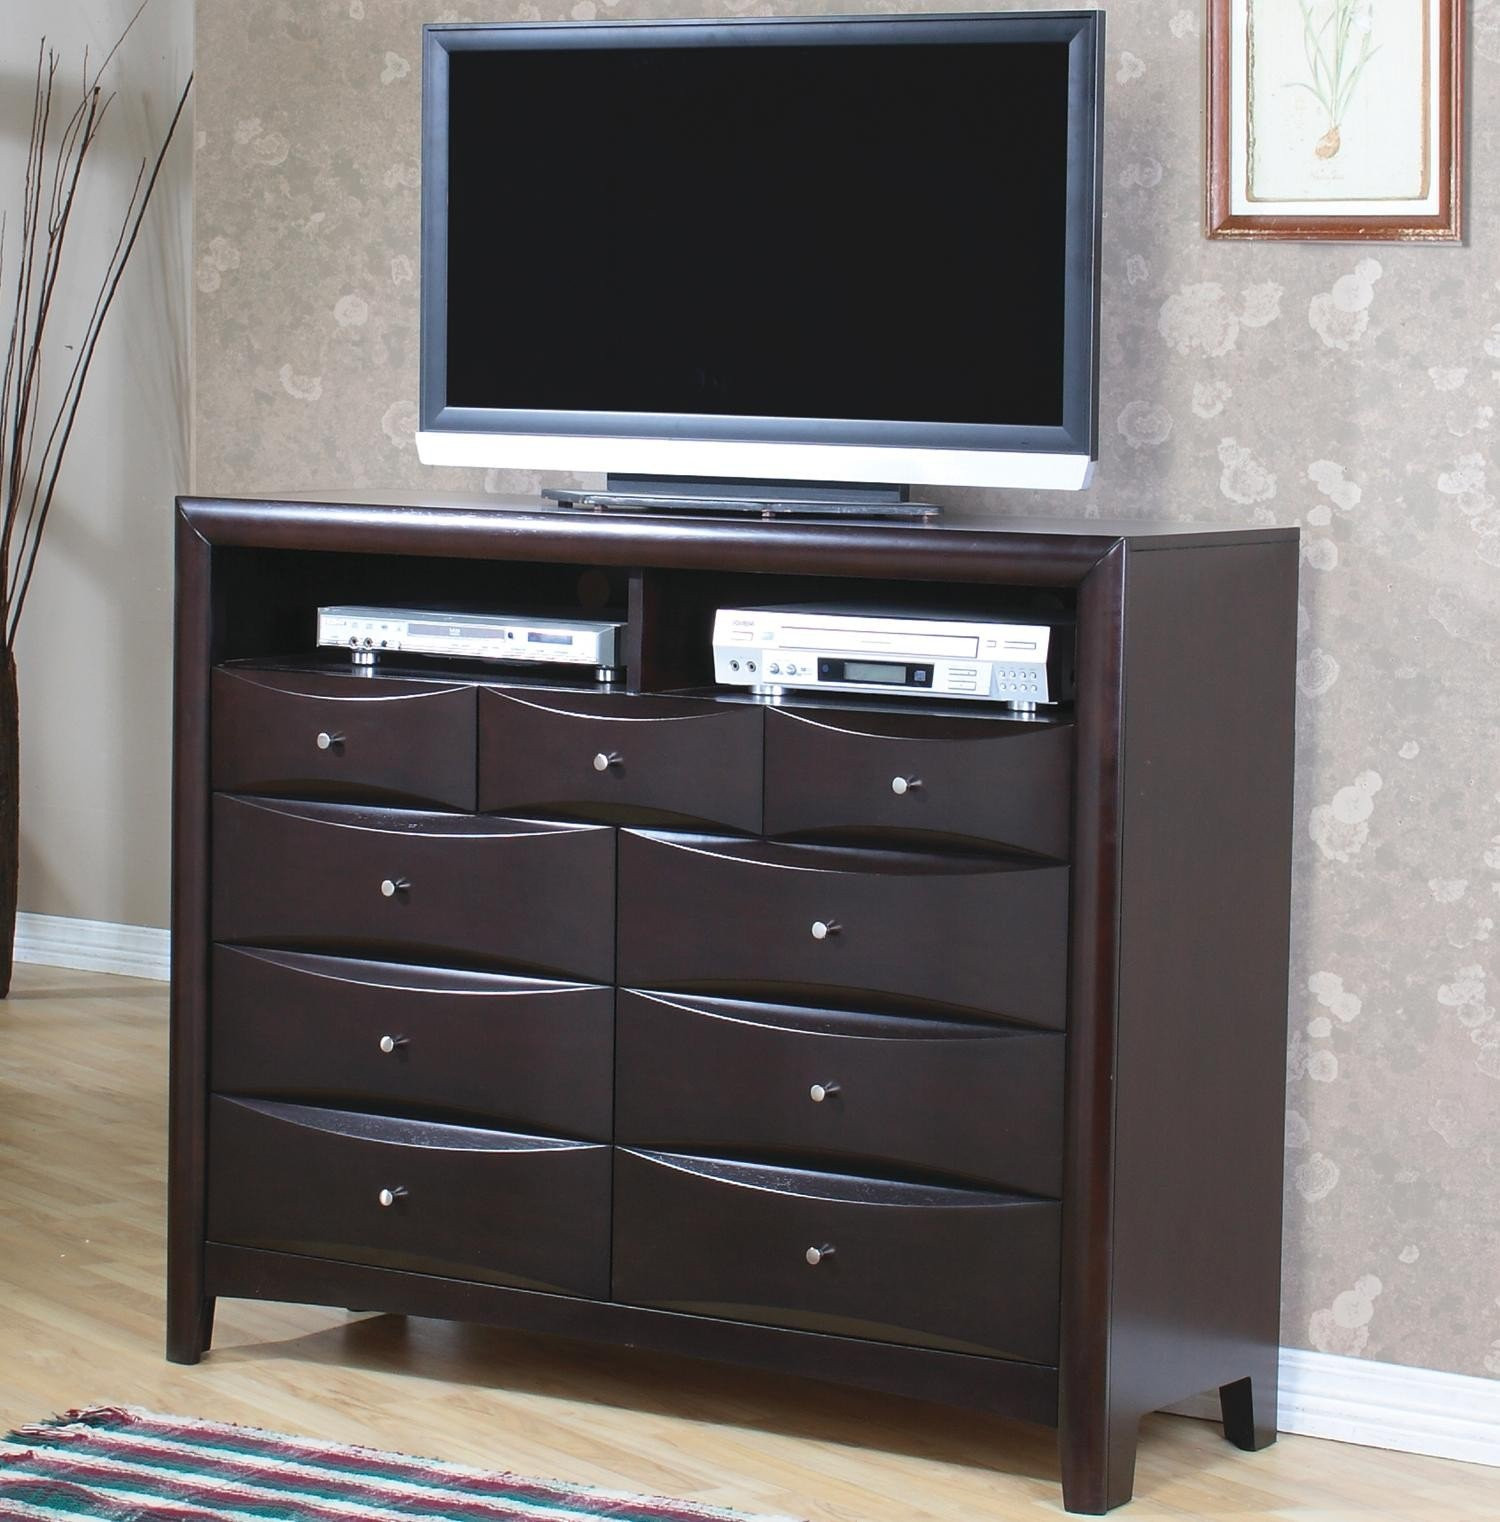 Bedroom Tv Cabinet
 Bedroom TV Stand Dresser Home Furniture Design